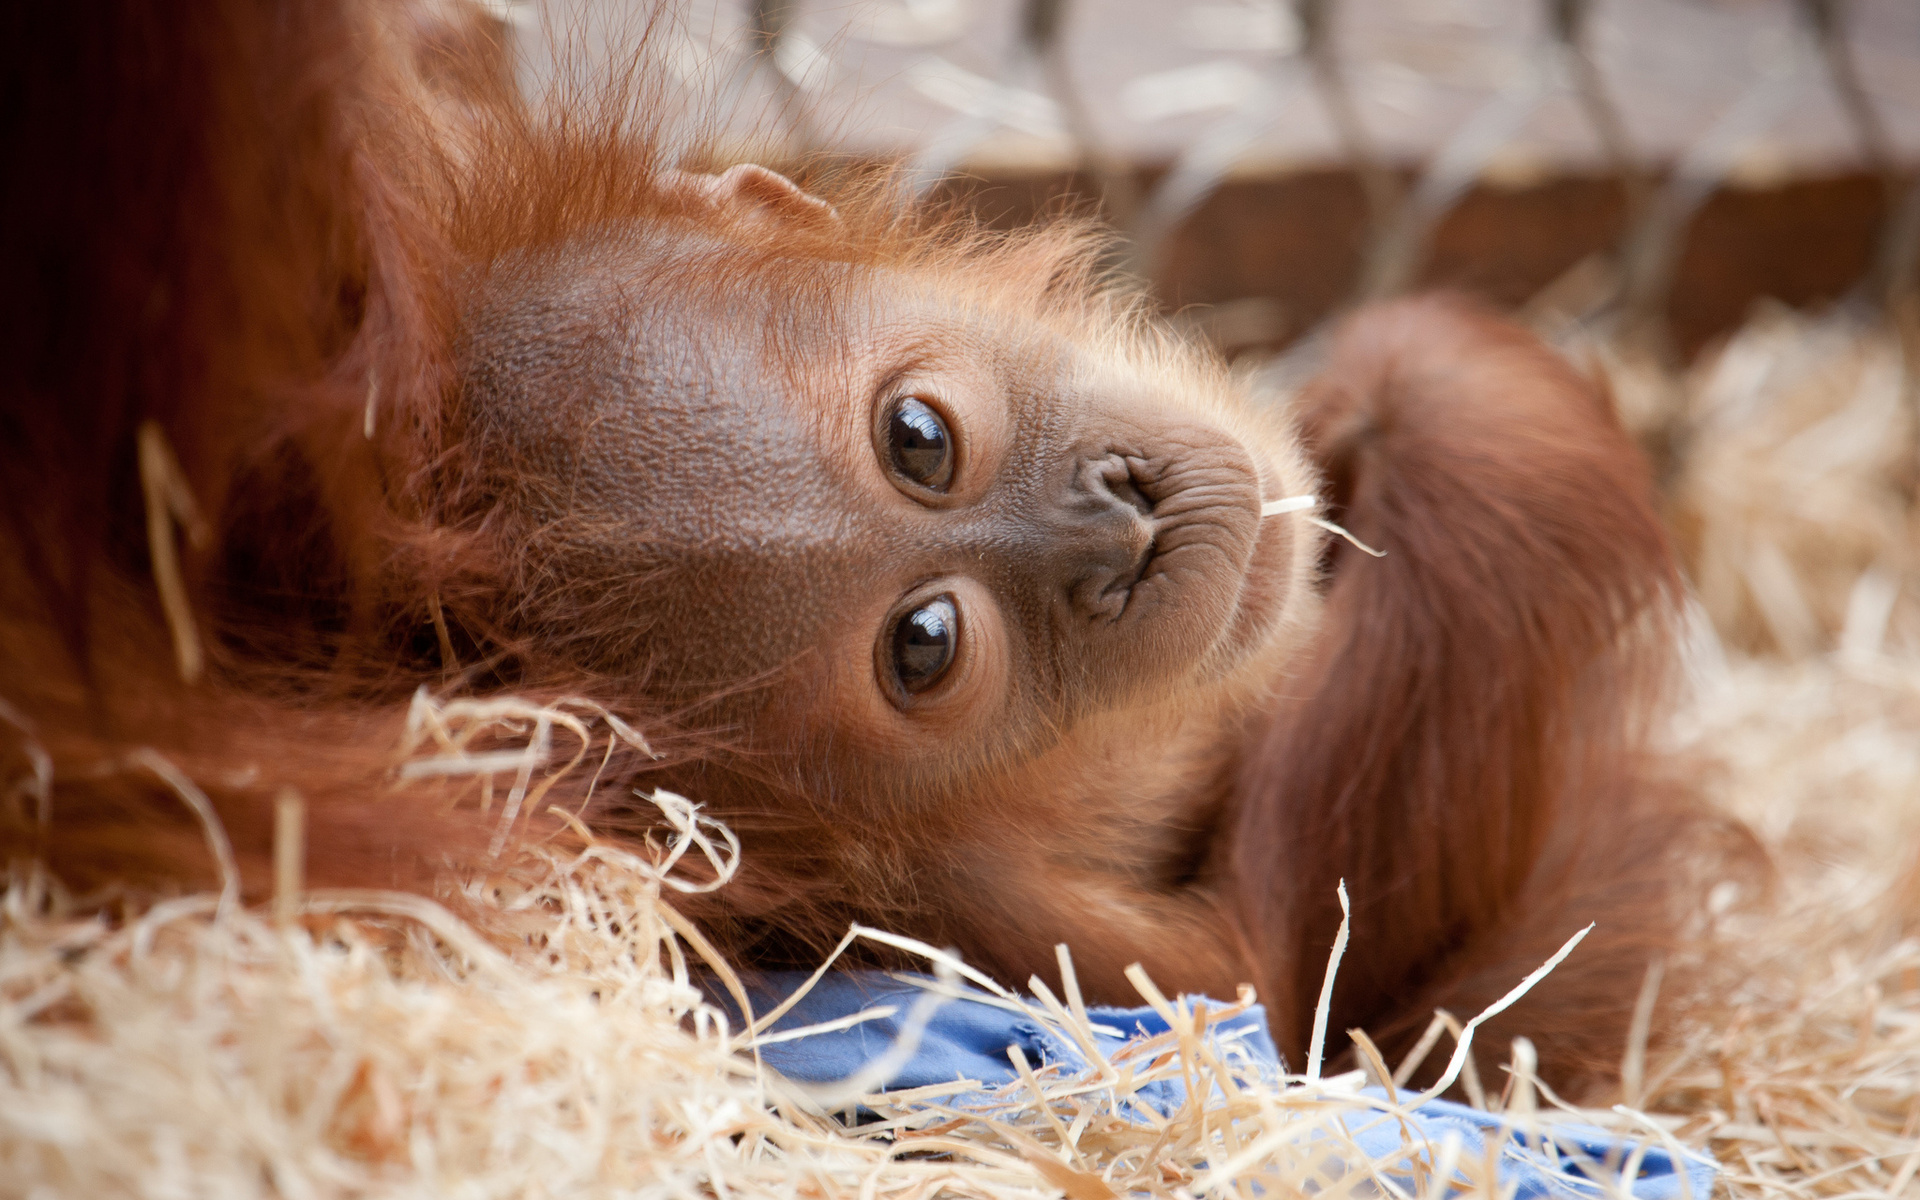 orangutan, animal, baby animal, primate, zoo, monkeys